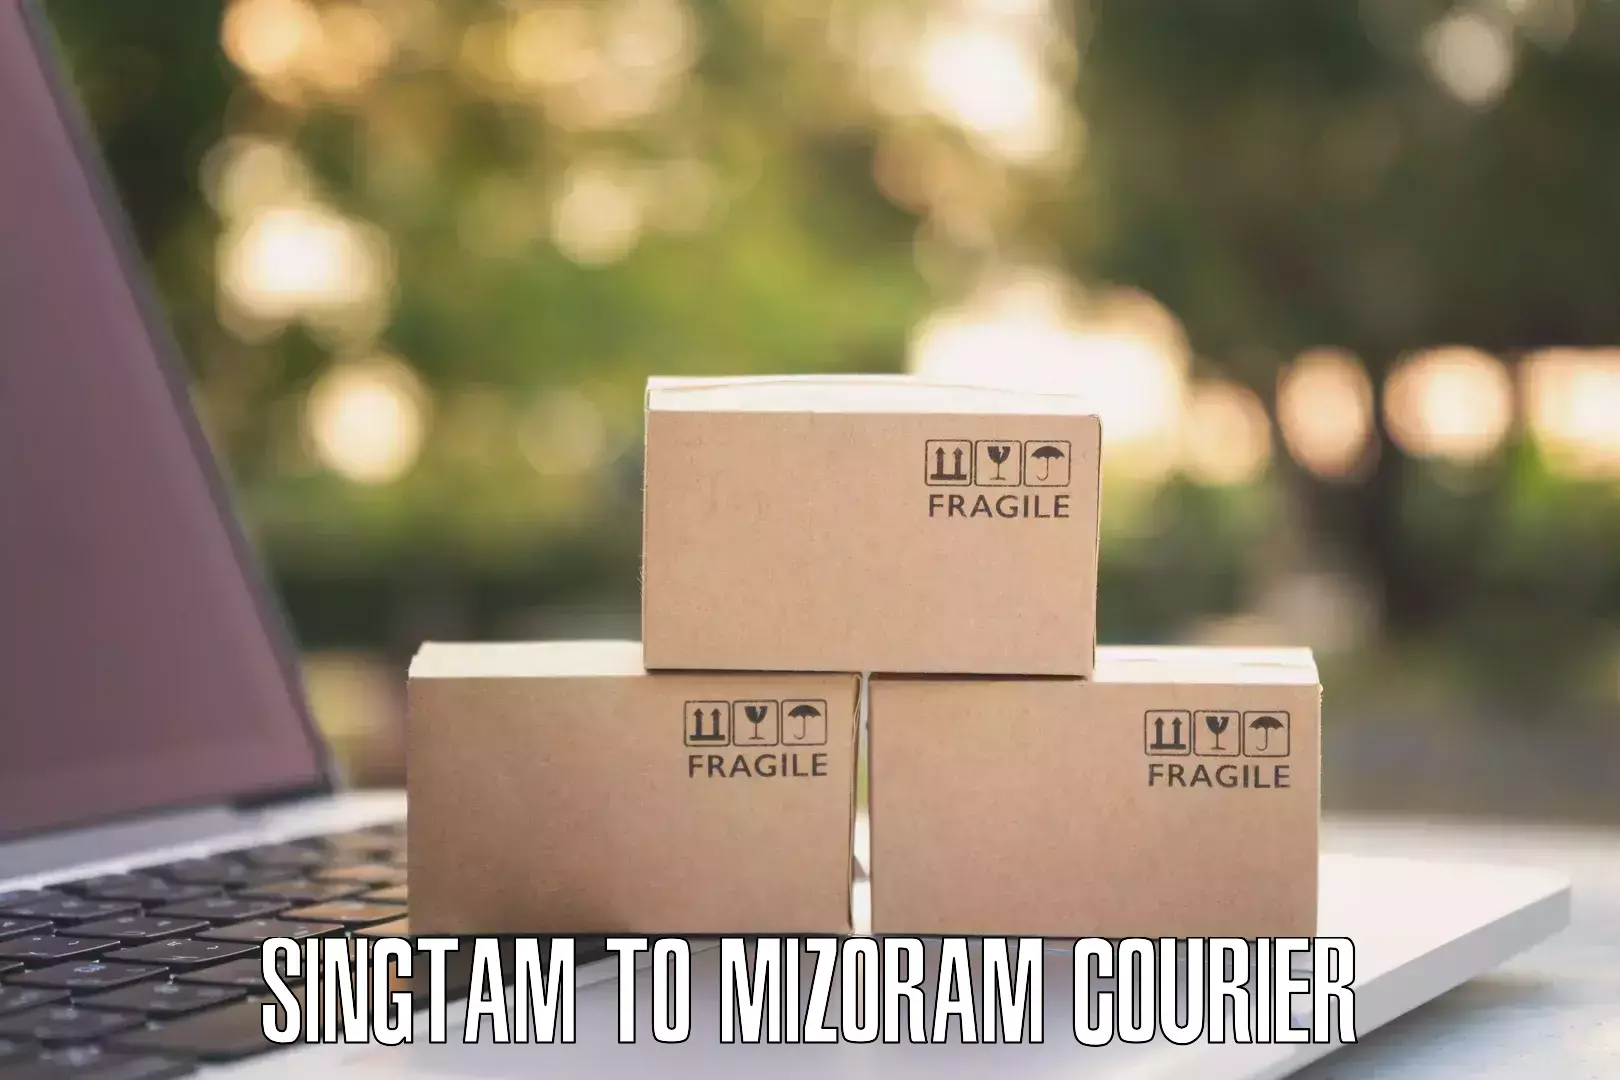 Courier service comparison Singtam to Tlabung